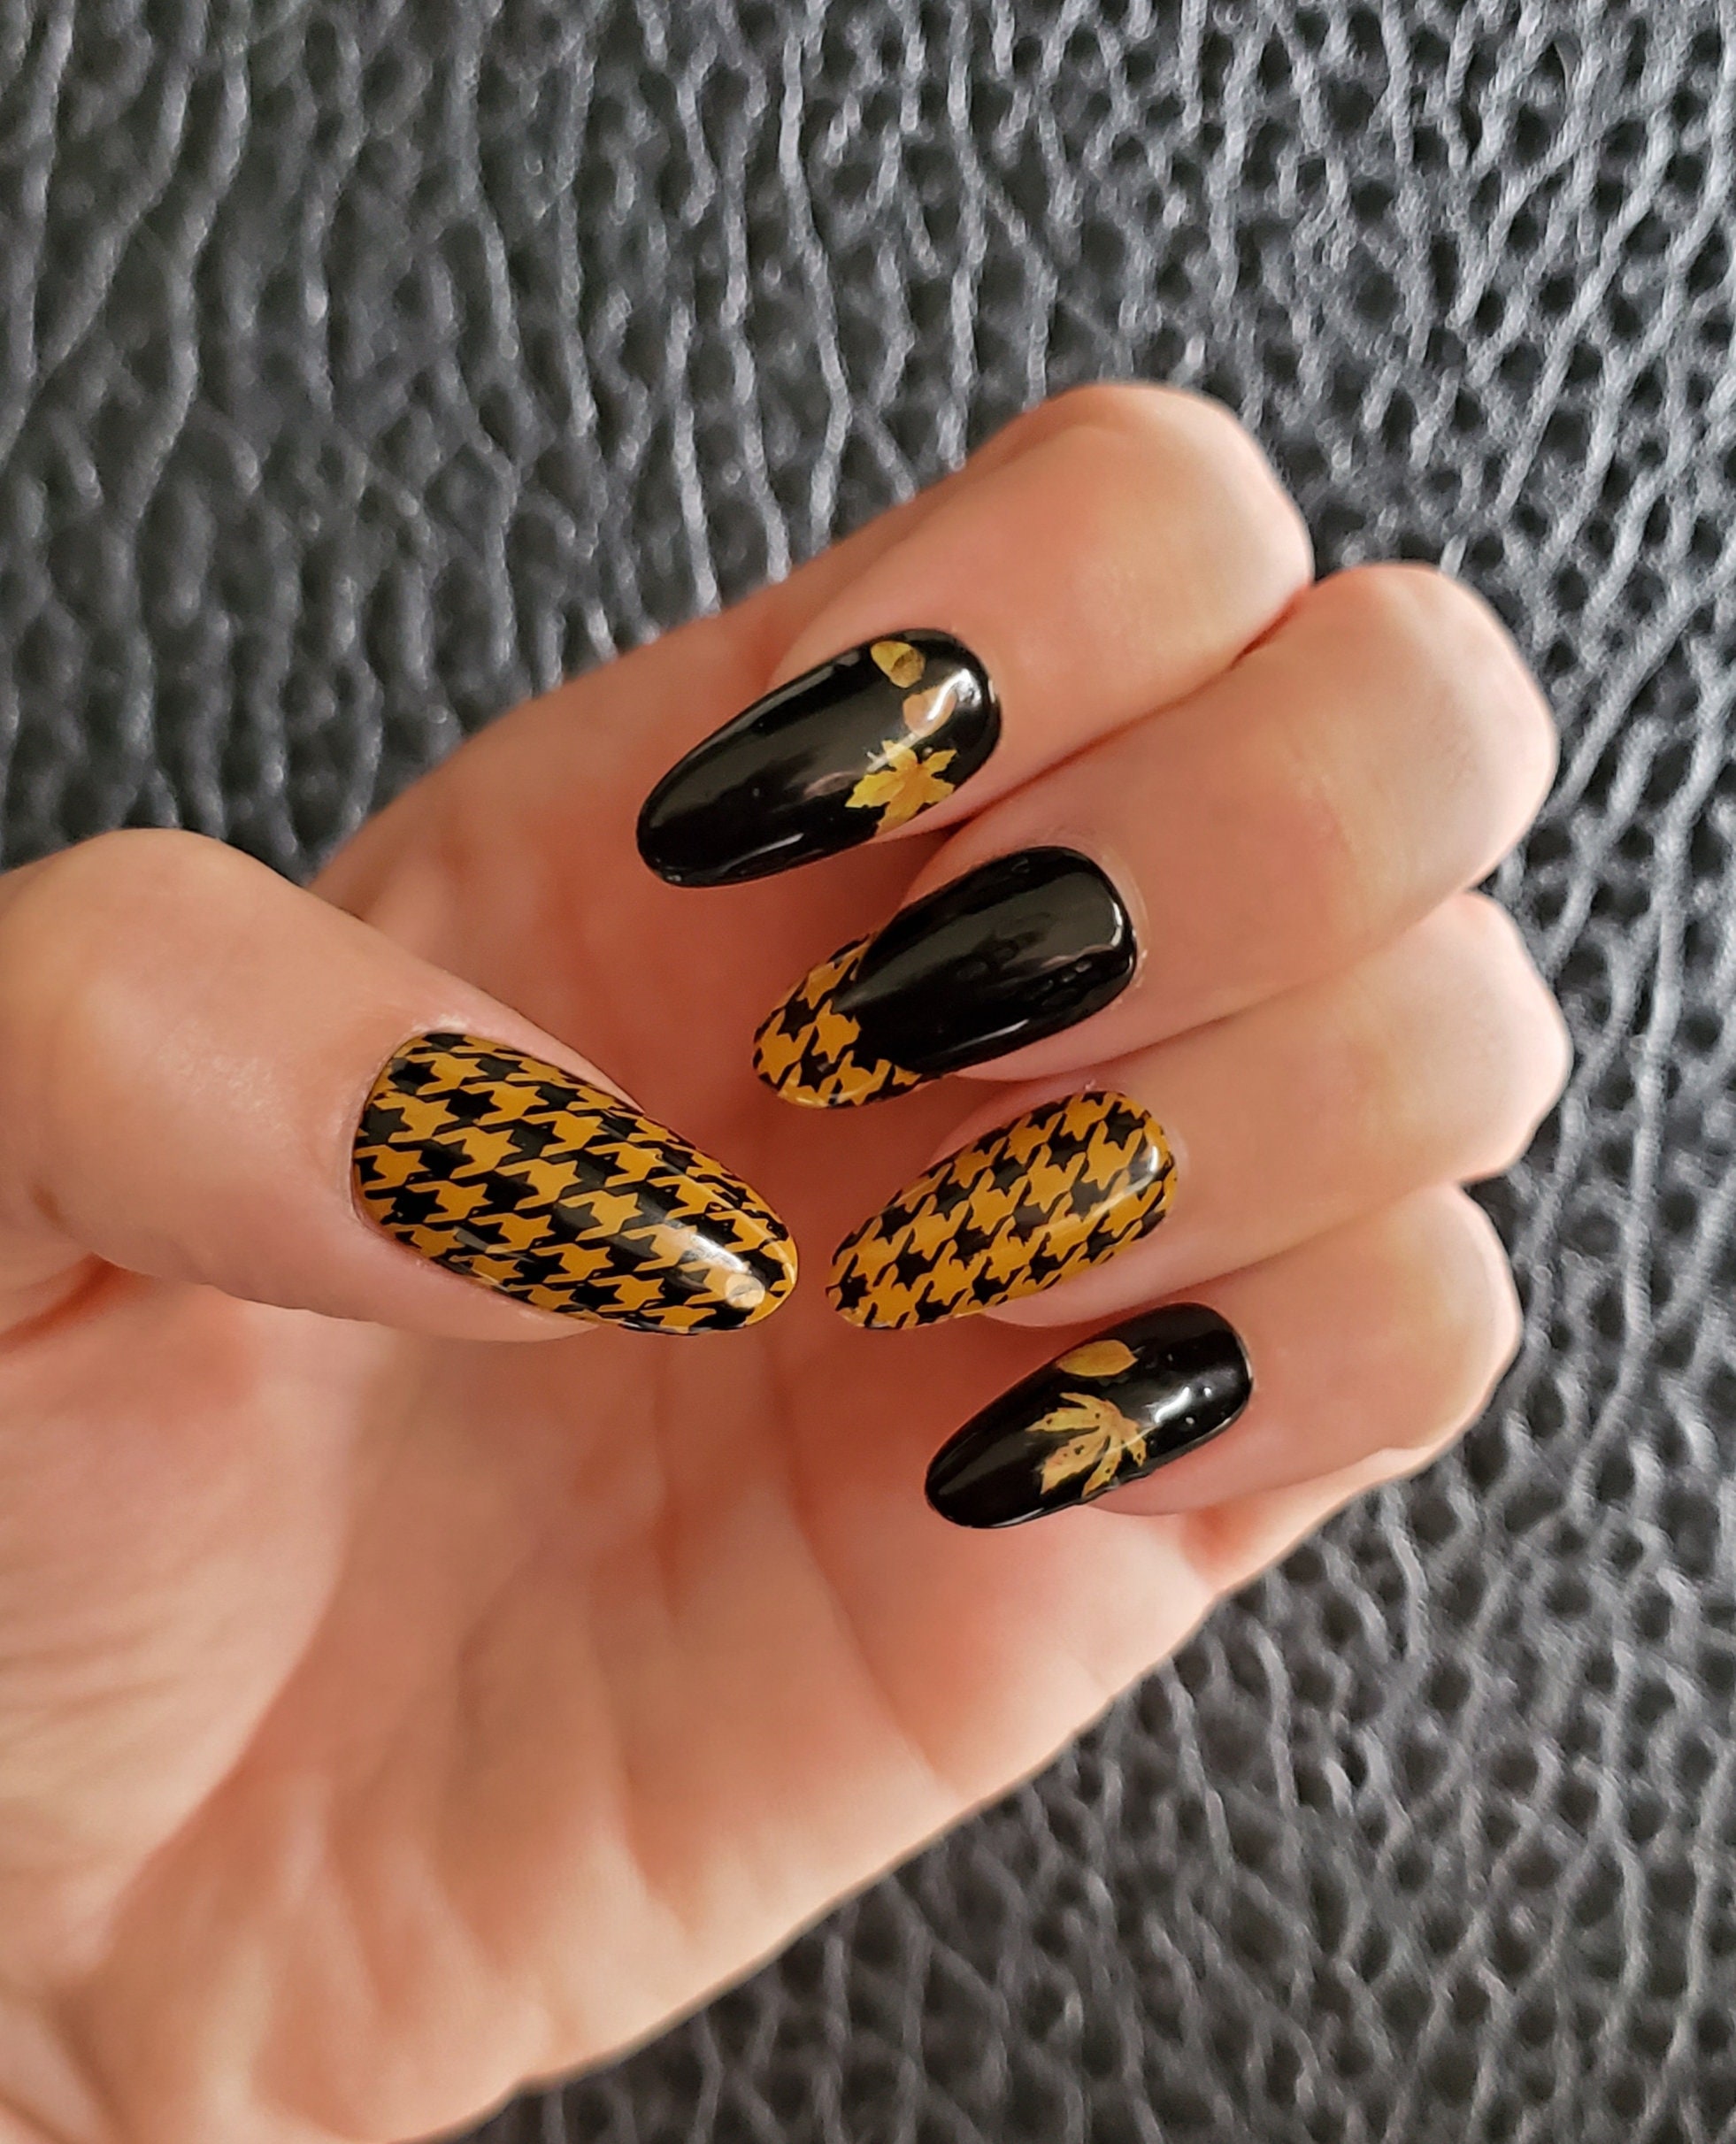 Yellow & Black Nails | Green toe nails, Yellow nails, Green nail art